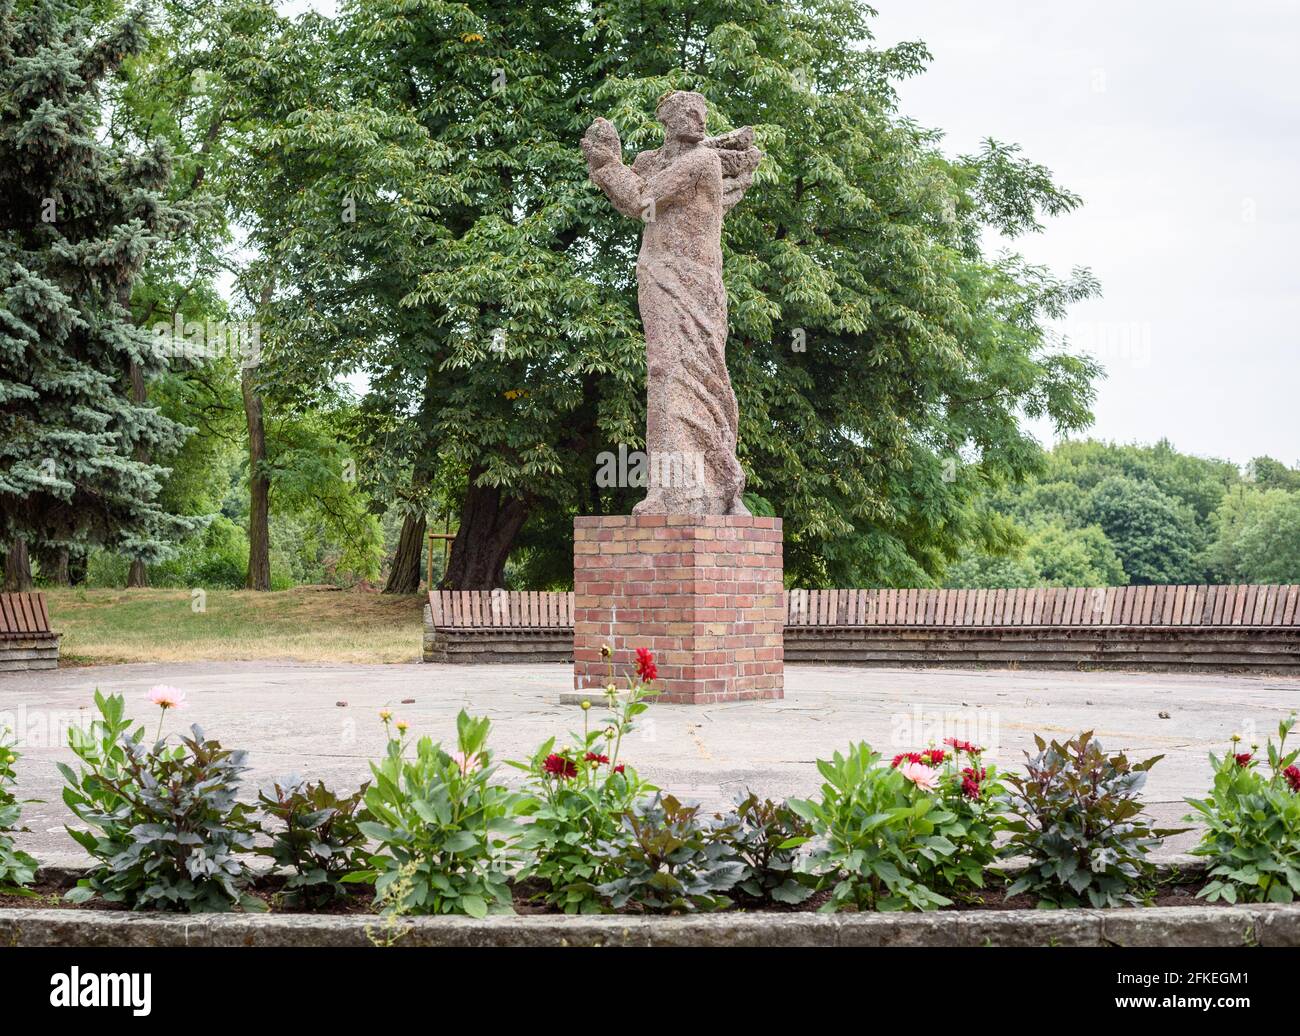 Poznan, wielkopolskie, Poland, 06.07.2019: A sculpture of Nike by Bazyli Wojtowicz in the Cytadela Park, Poznan, Poland Stock Photo